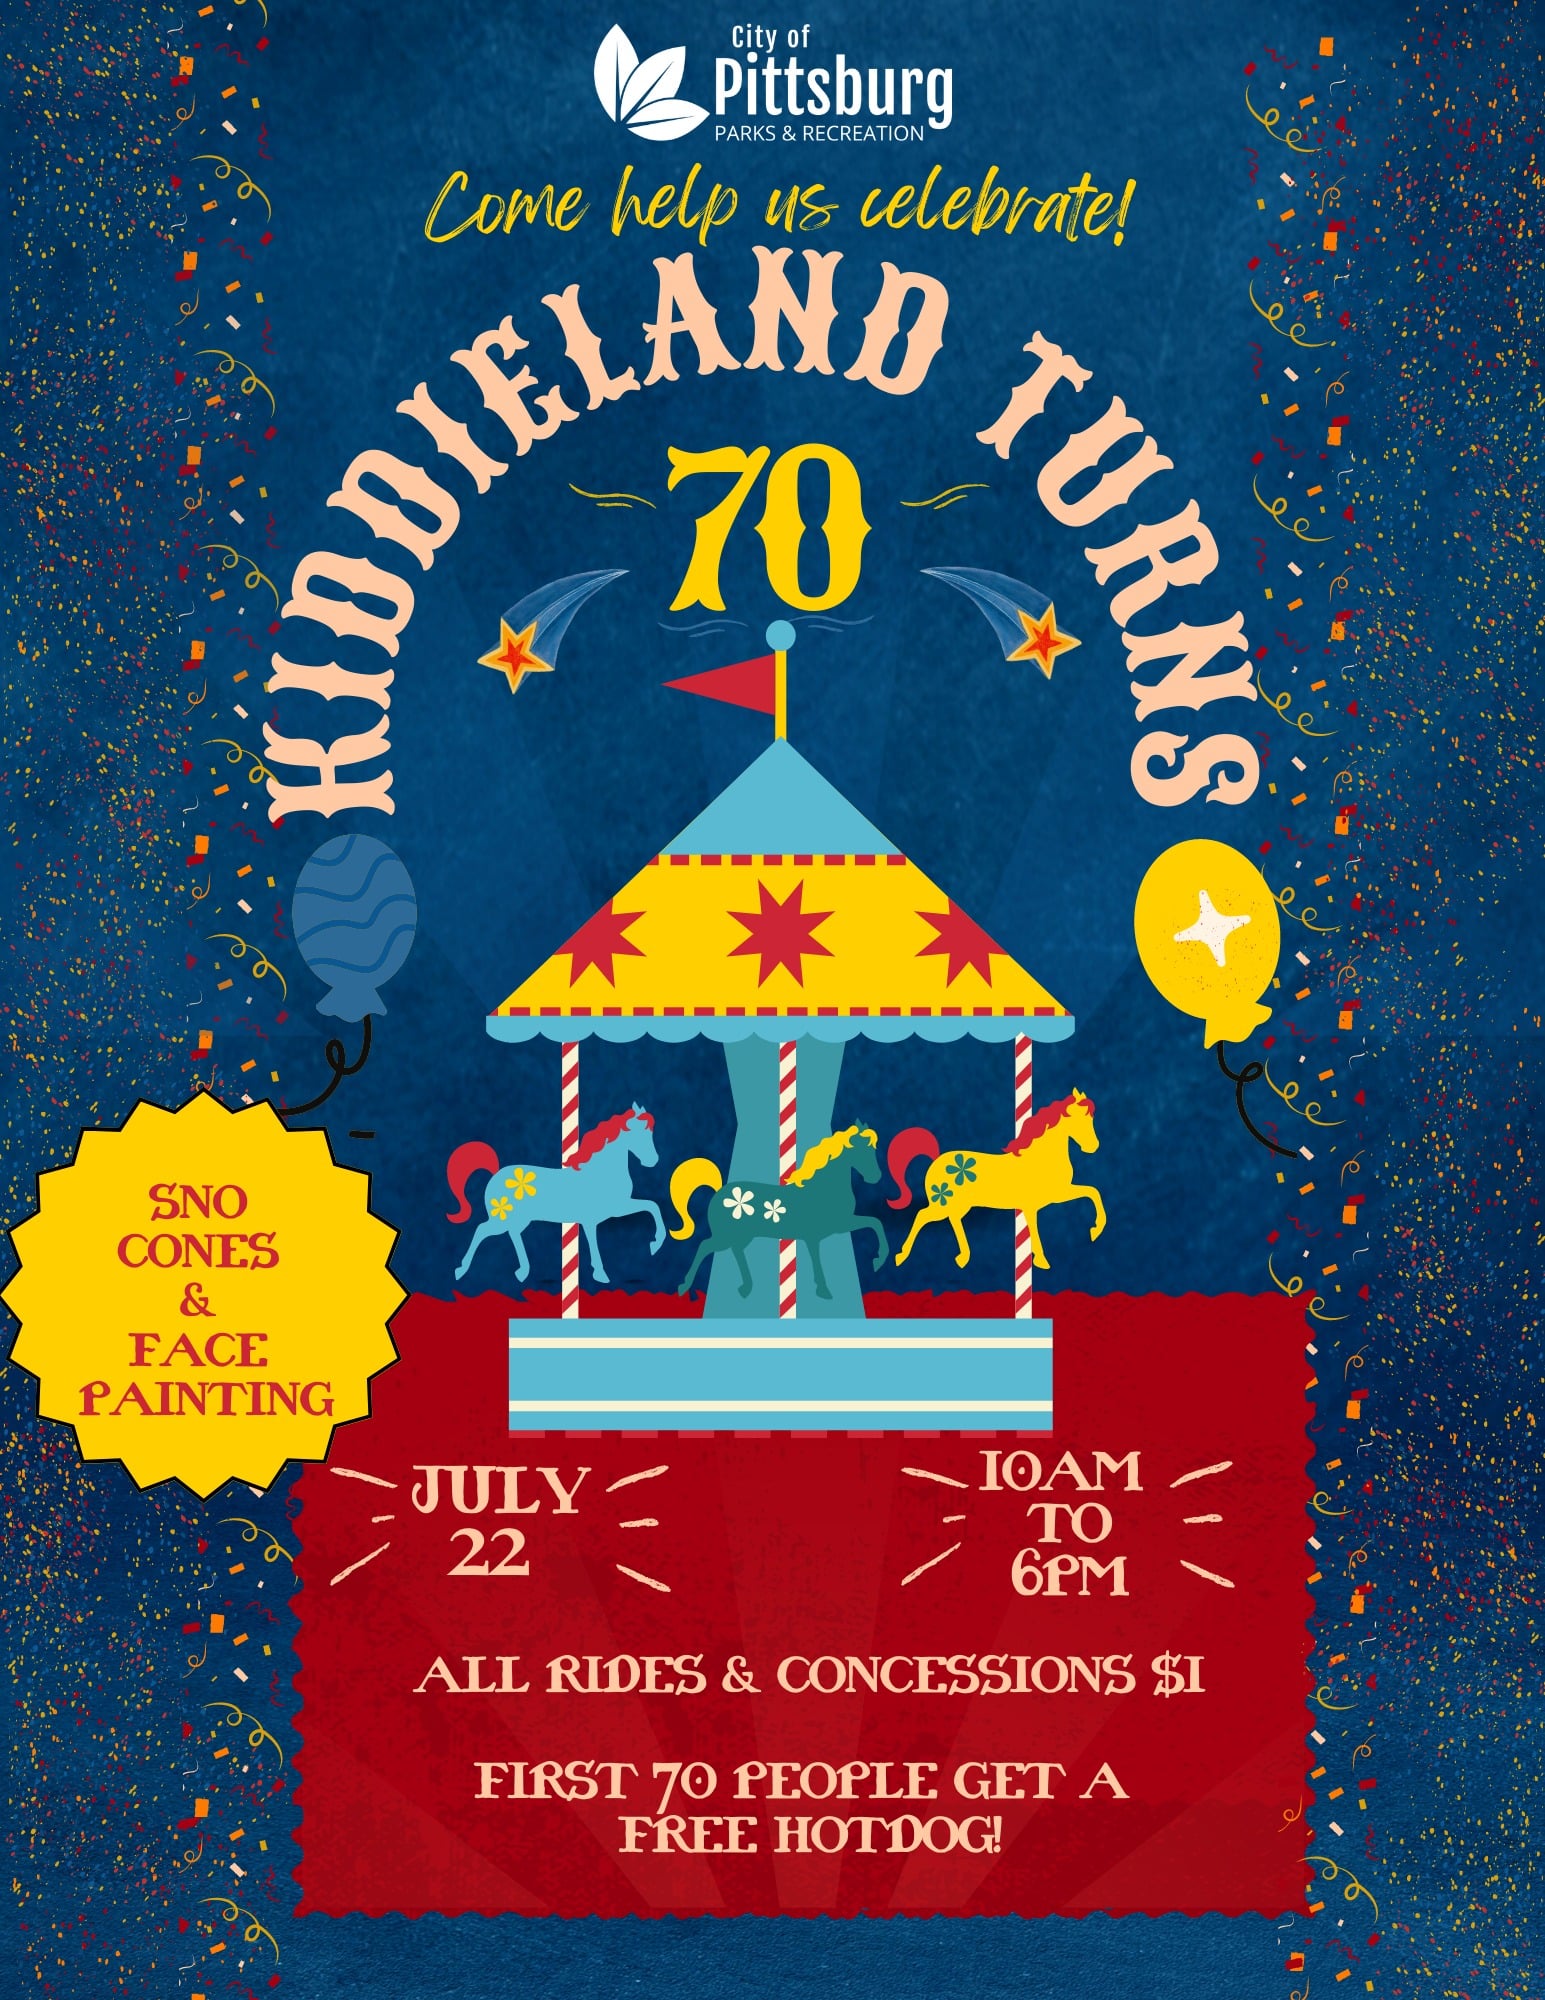 Kiddieland Turns 70